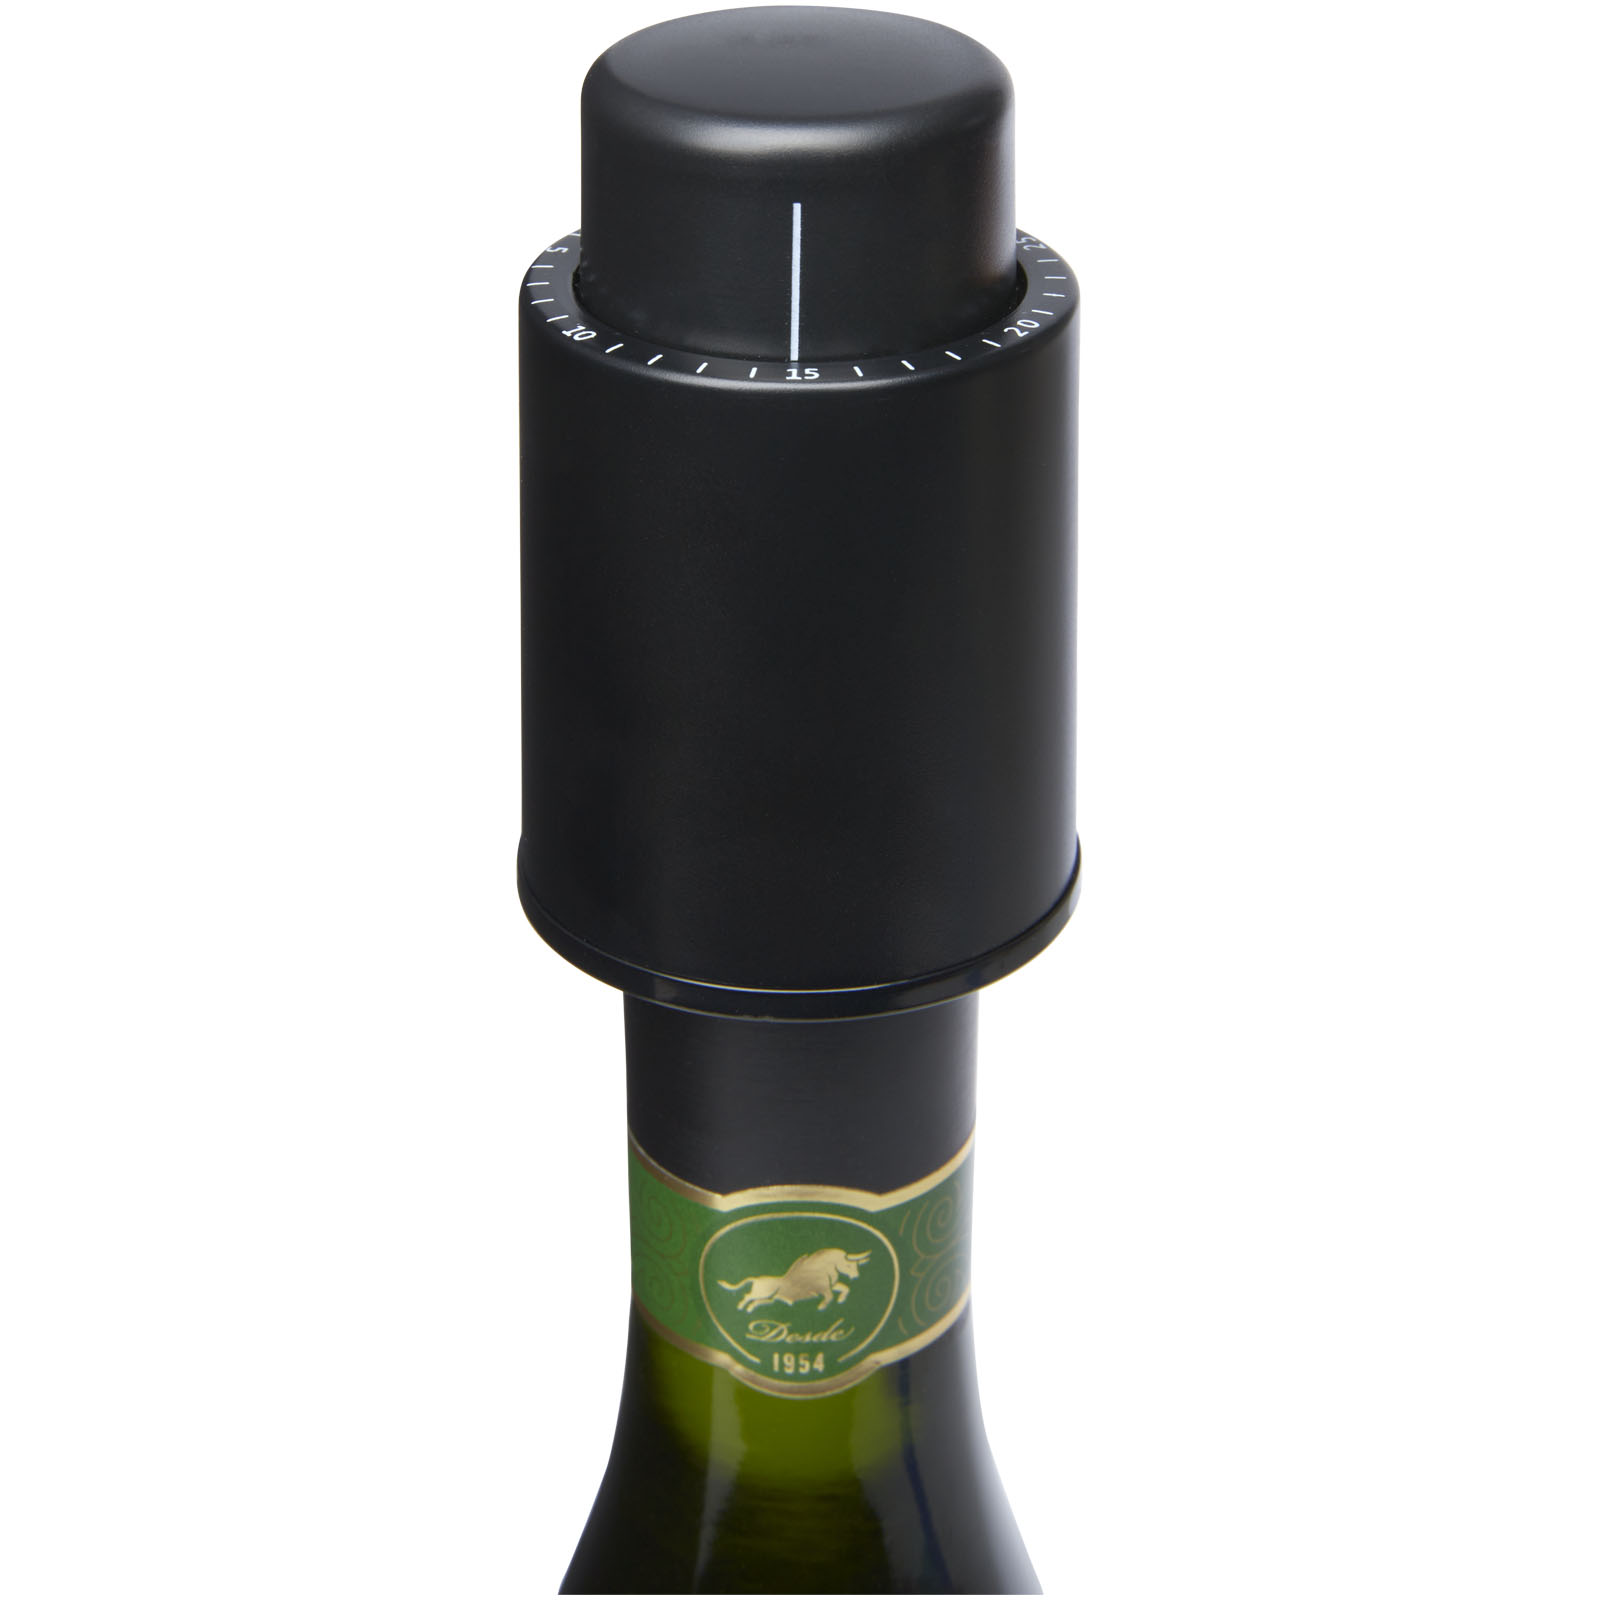 Accessoires pour le vin publicitaires - Bouchon stoppeur Sangio pour bouteille de vin  - 3